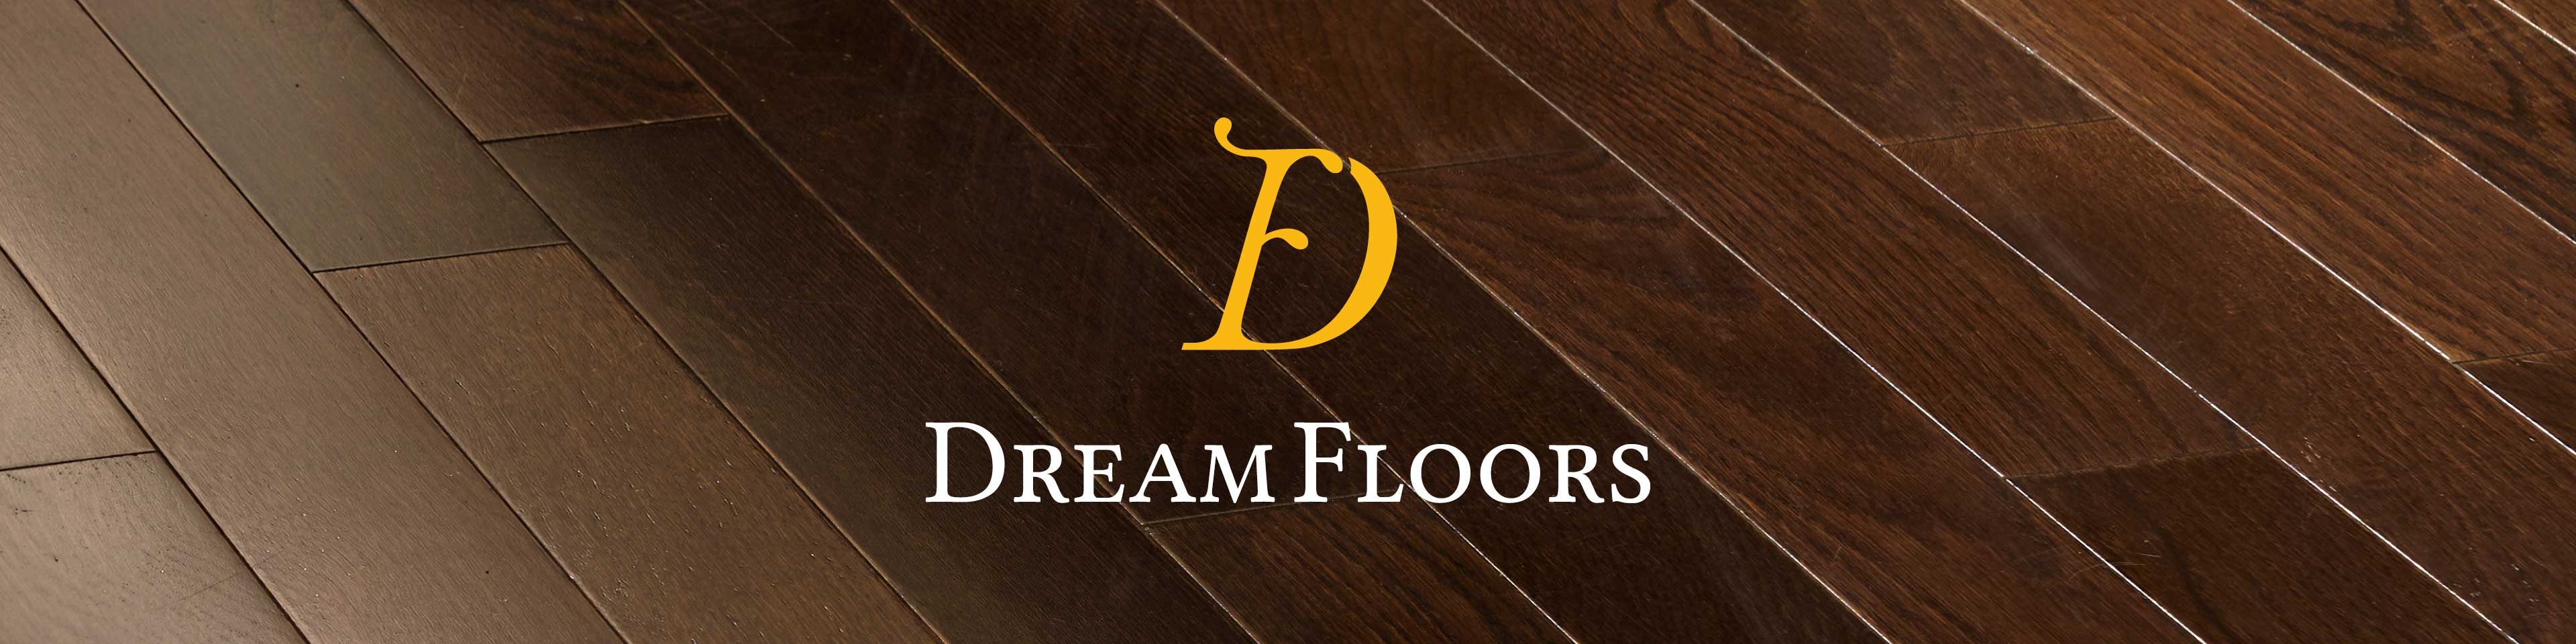 The Dream Floors logo